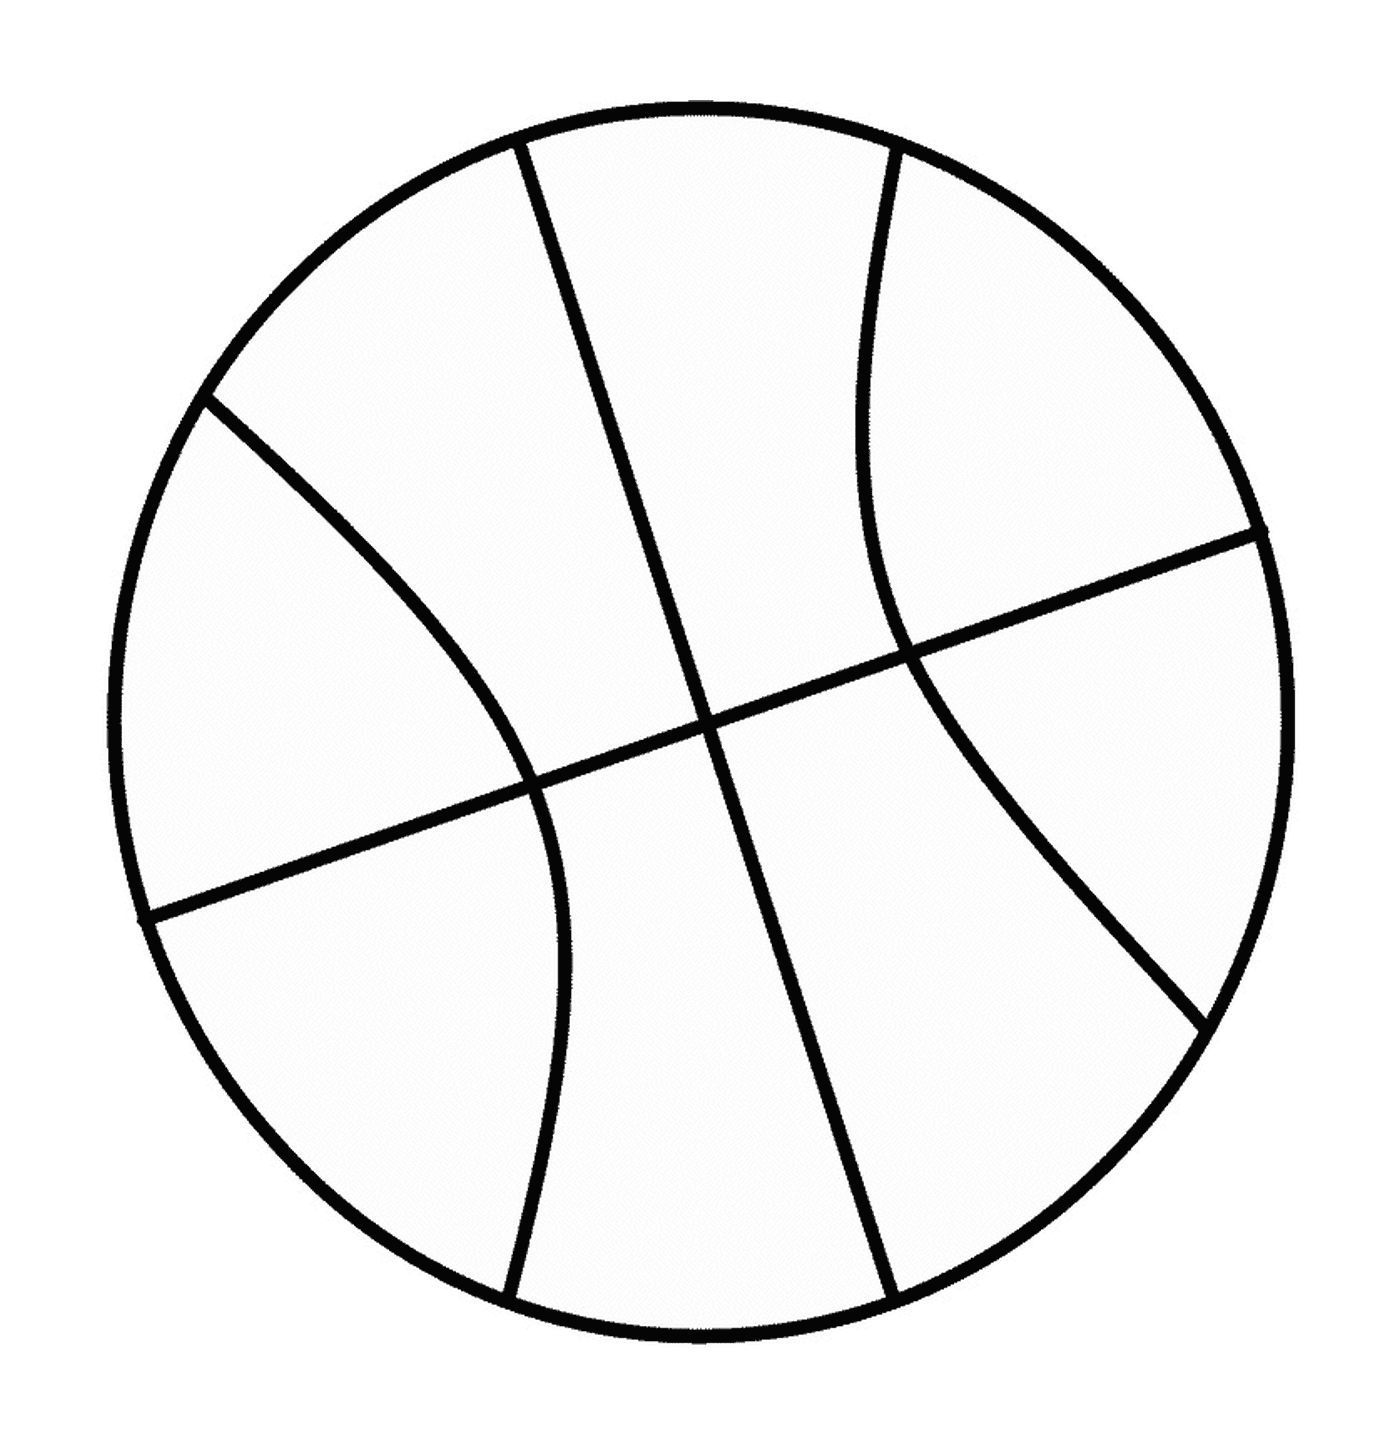  Imagem de uma bola de basquete 